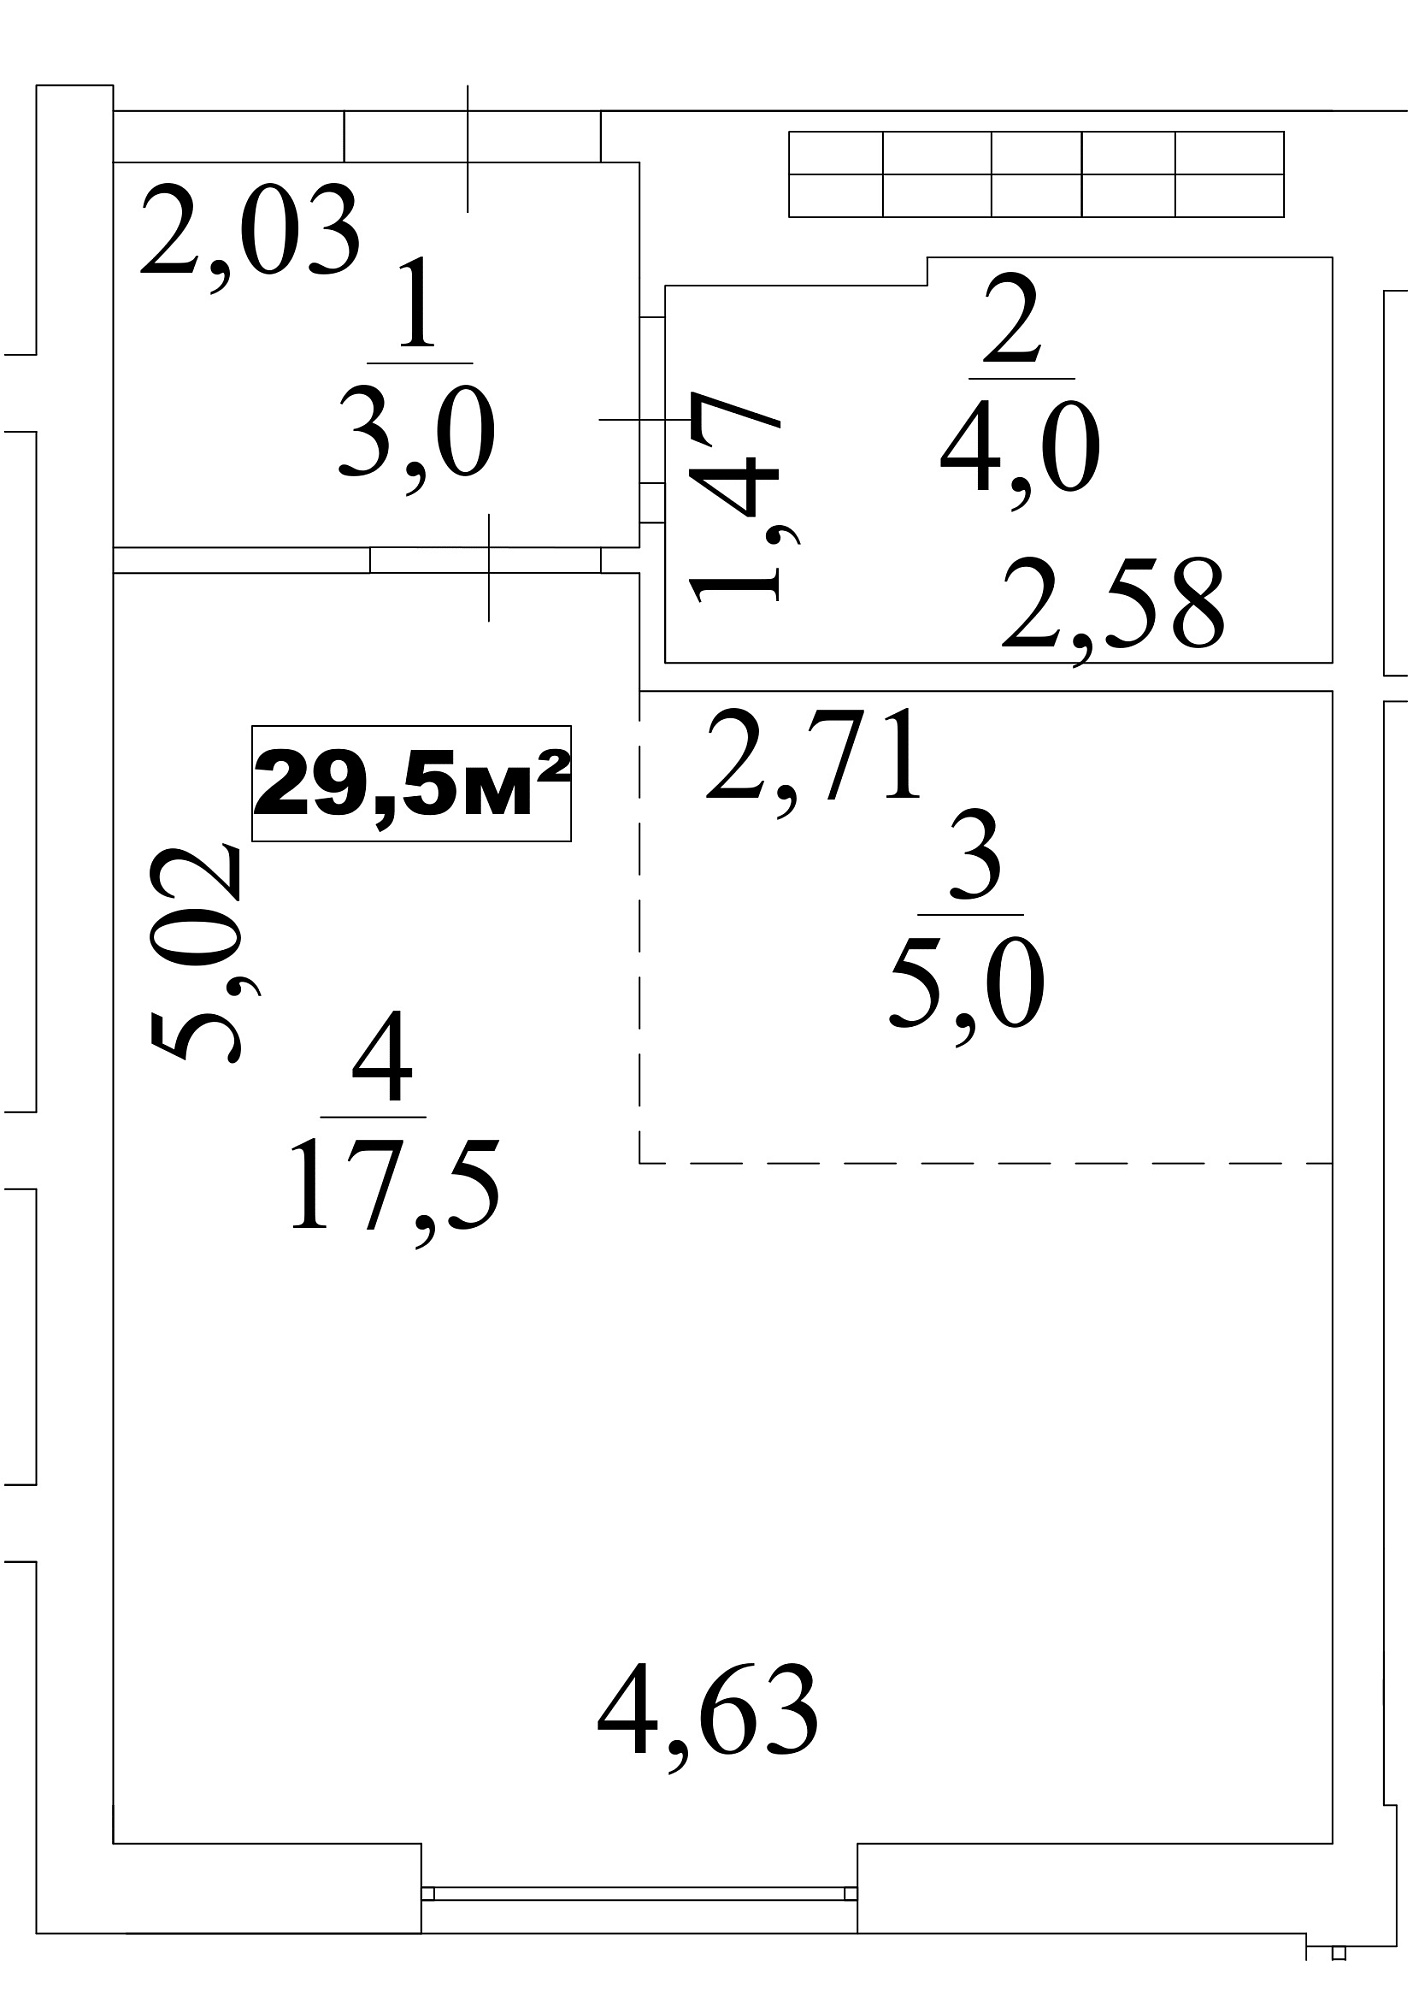 Планування Smart-квартира площею 29.5м2, AB-10-04/00036.